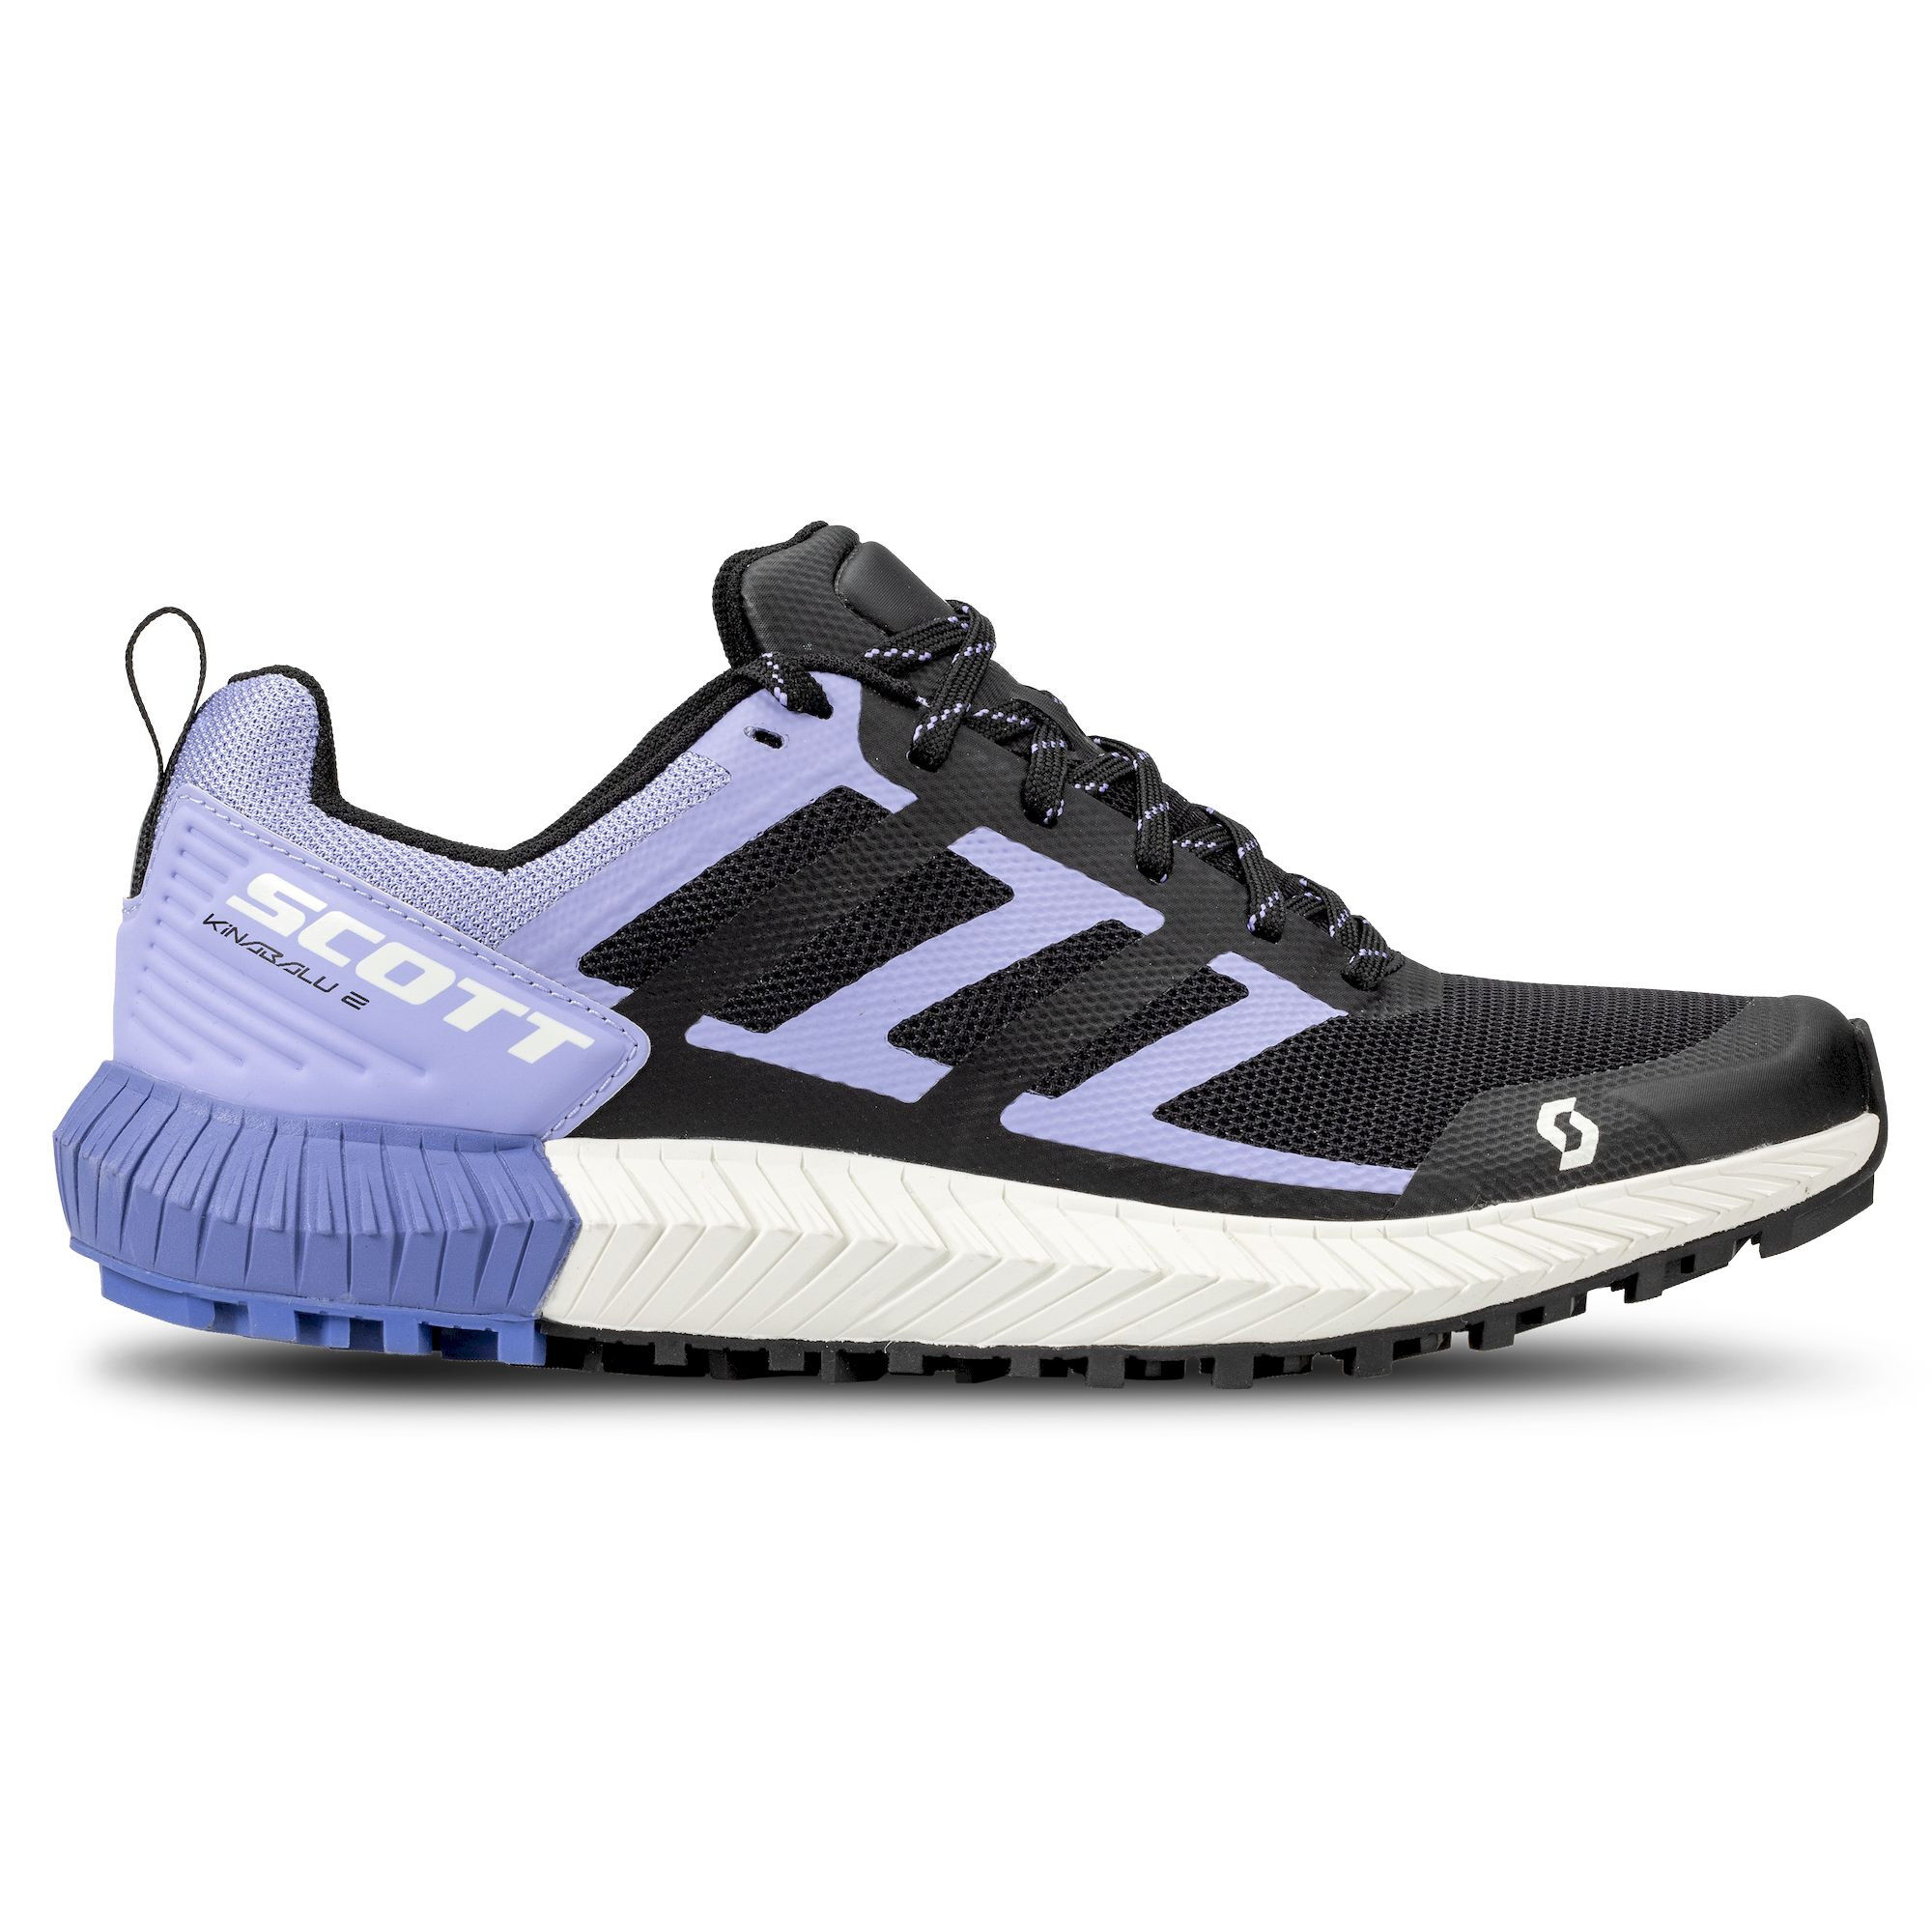 Scott Kinabalu 2 - Trail running shoes - Women's